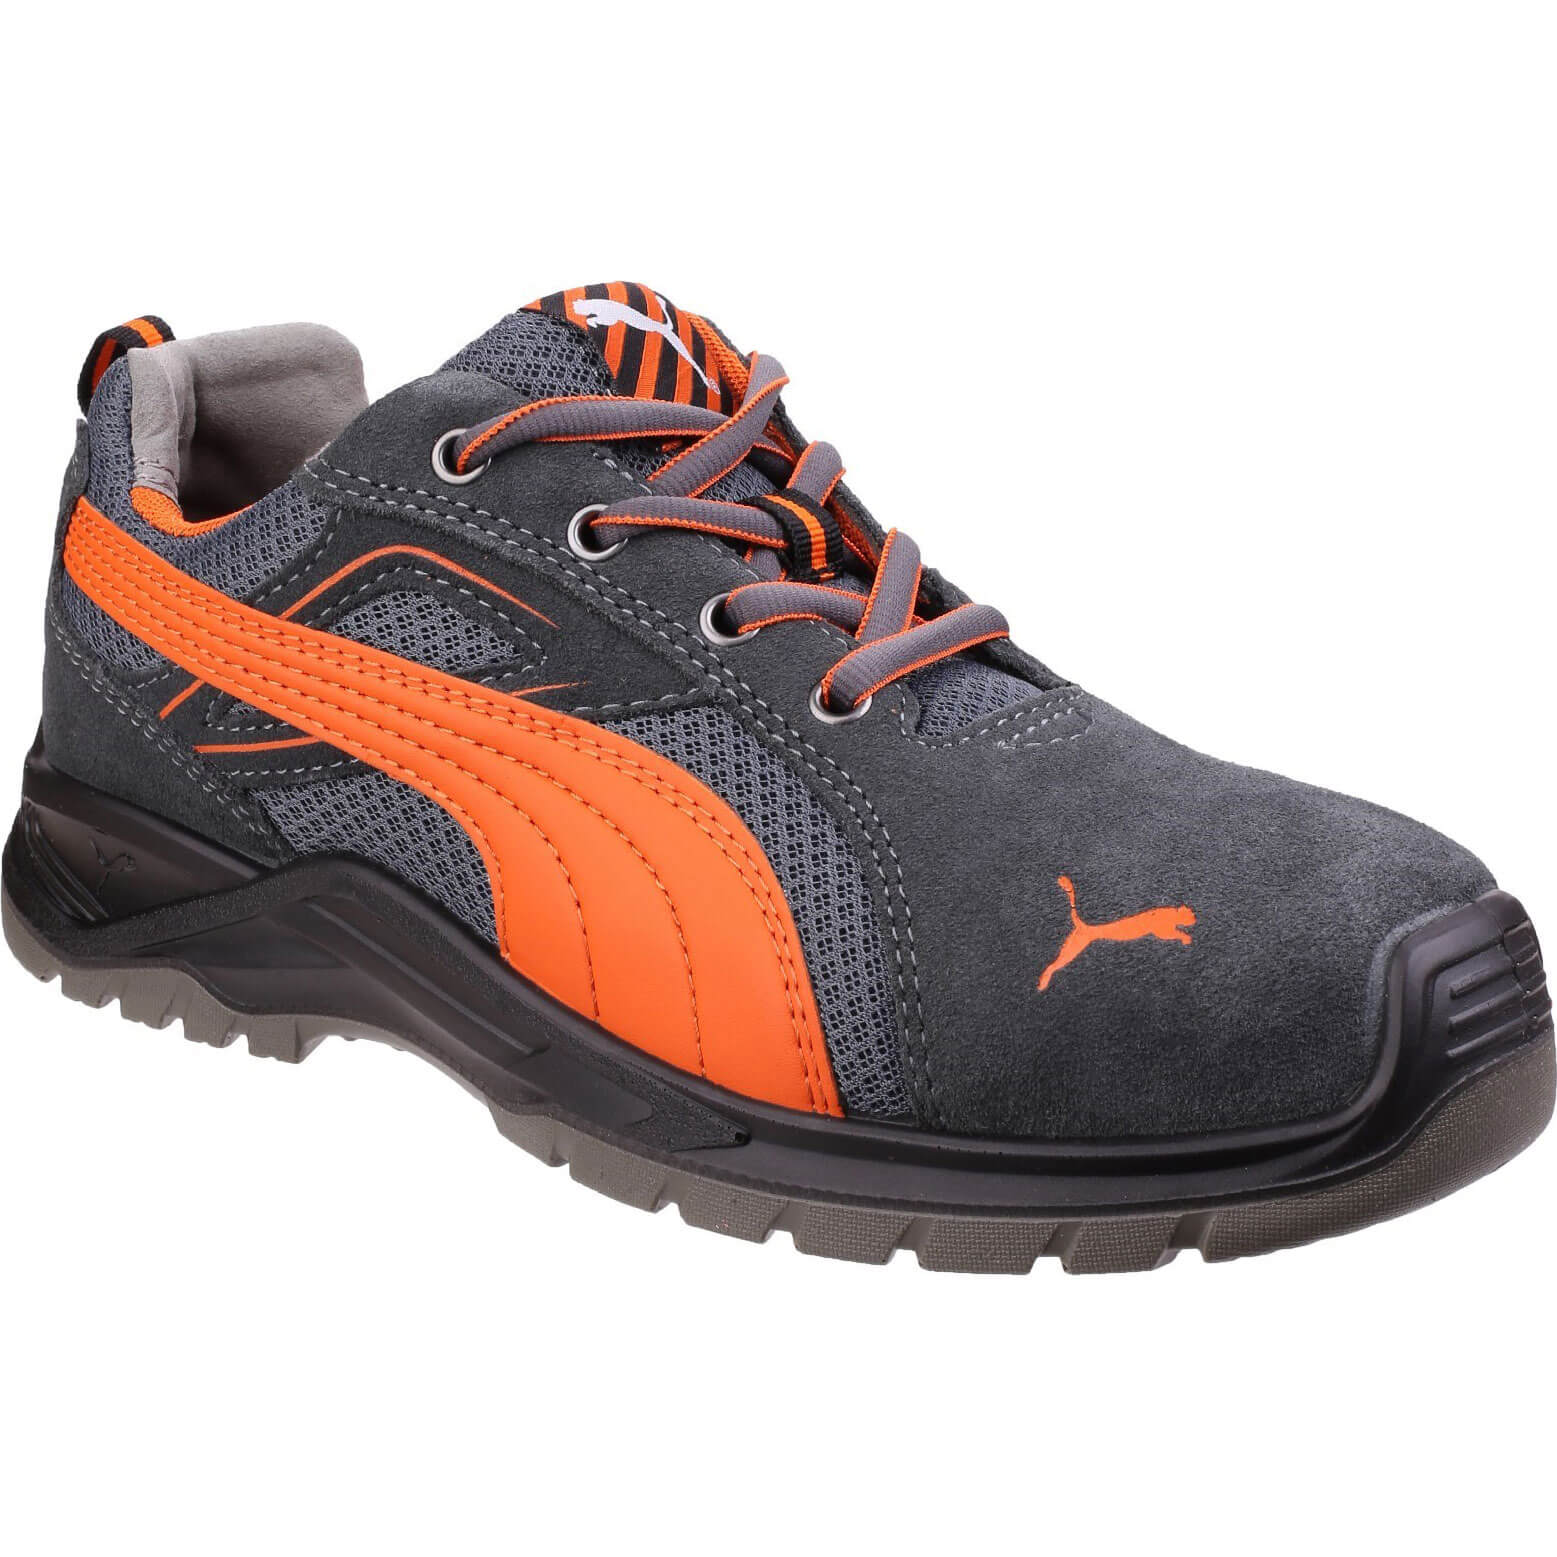 Image of Puma Safety Omni Sky Low Safety Shoe Orange Size 10